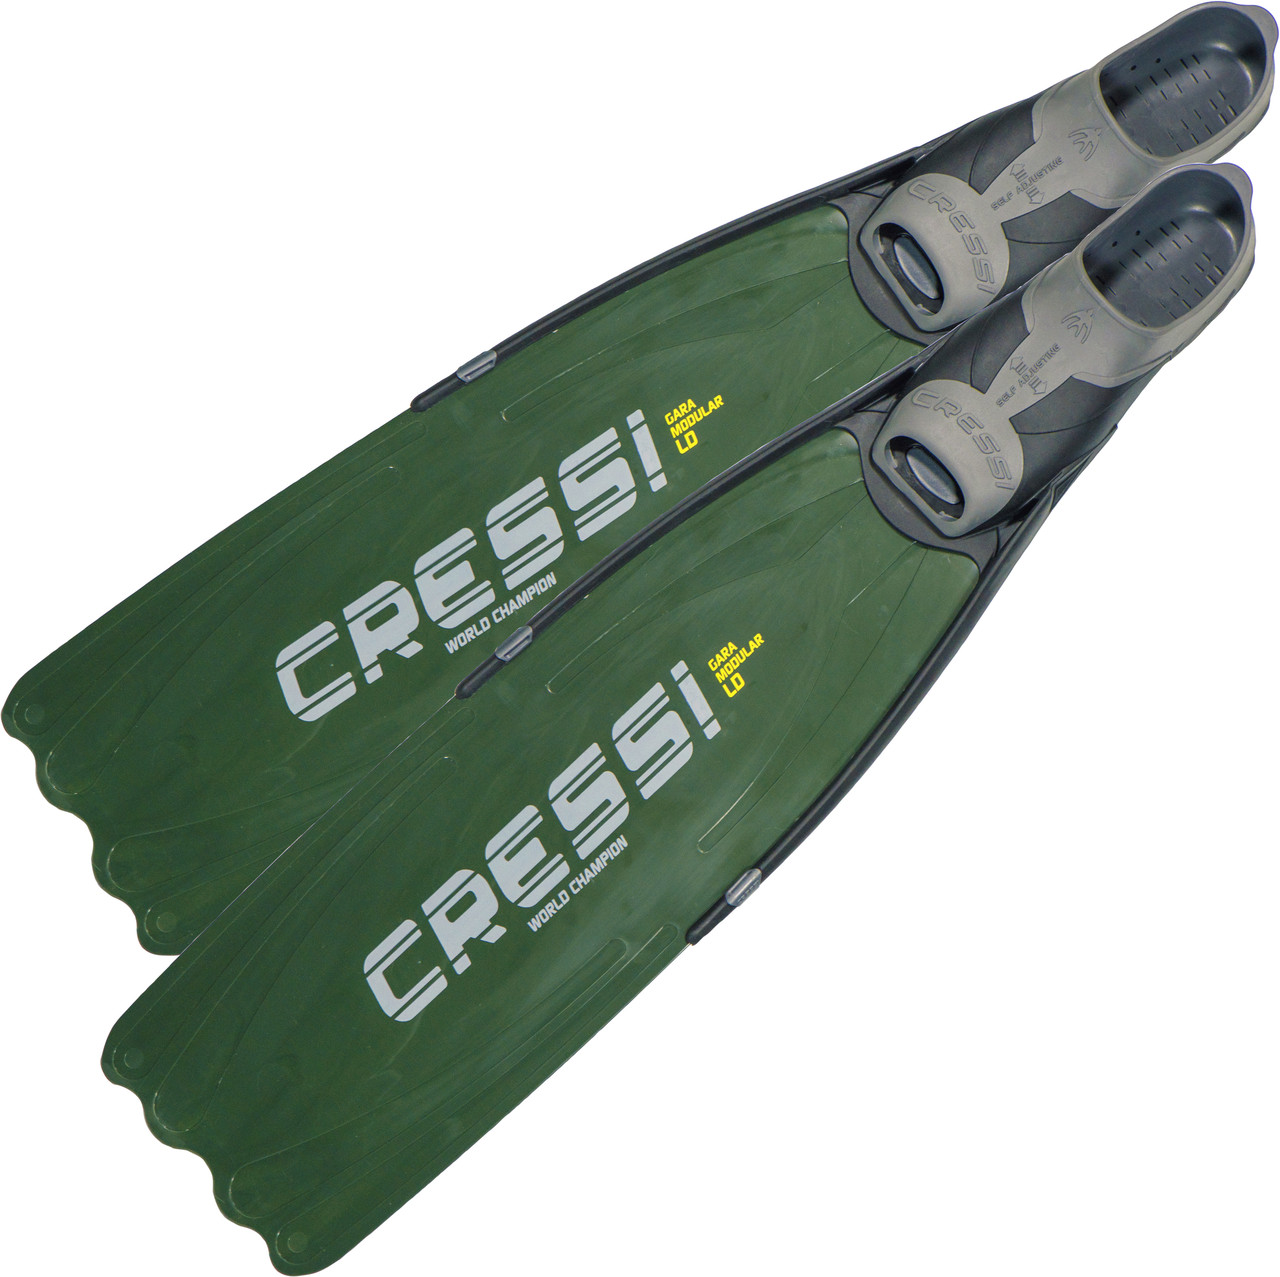 Ласти Cressi Gara Modular LD для підводного полювання, зелені